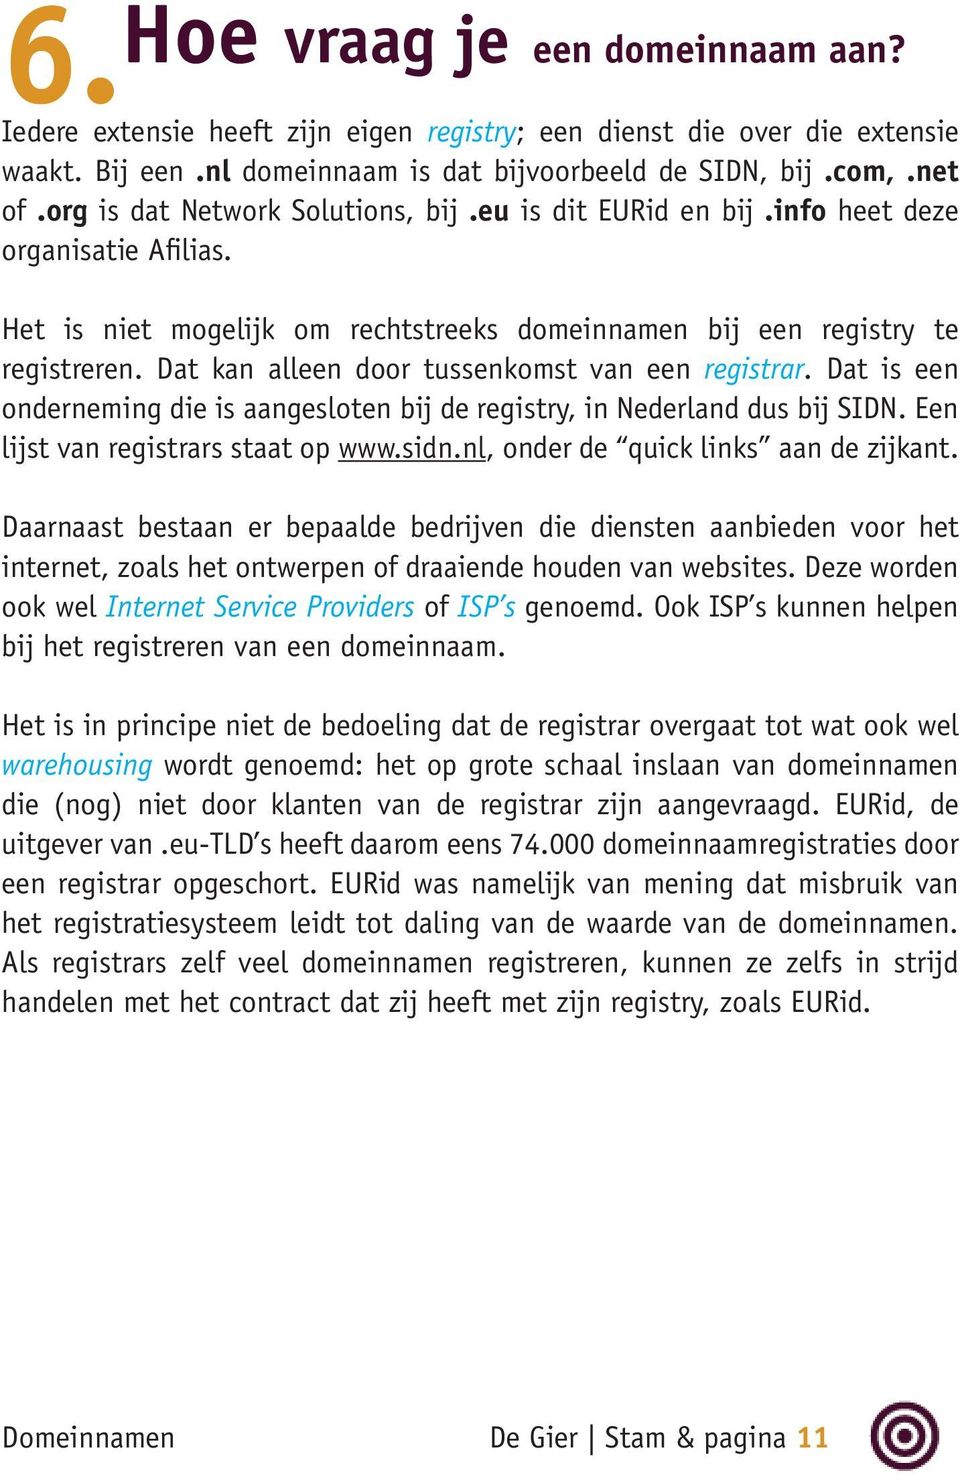 Dat kan alleen door tussenkomst van een registrar. Dat is een onderneming die is aangesloten bij de registry, in Nederland dus bij SIDN. Een lijst van registrars staat op www.sidn.